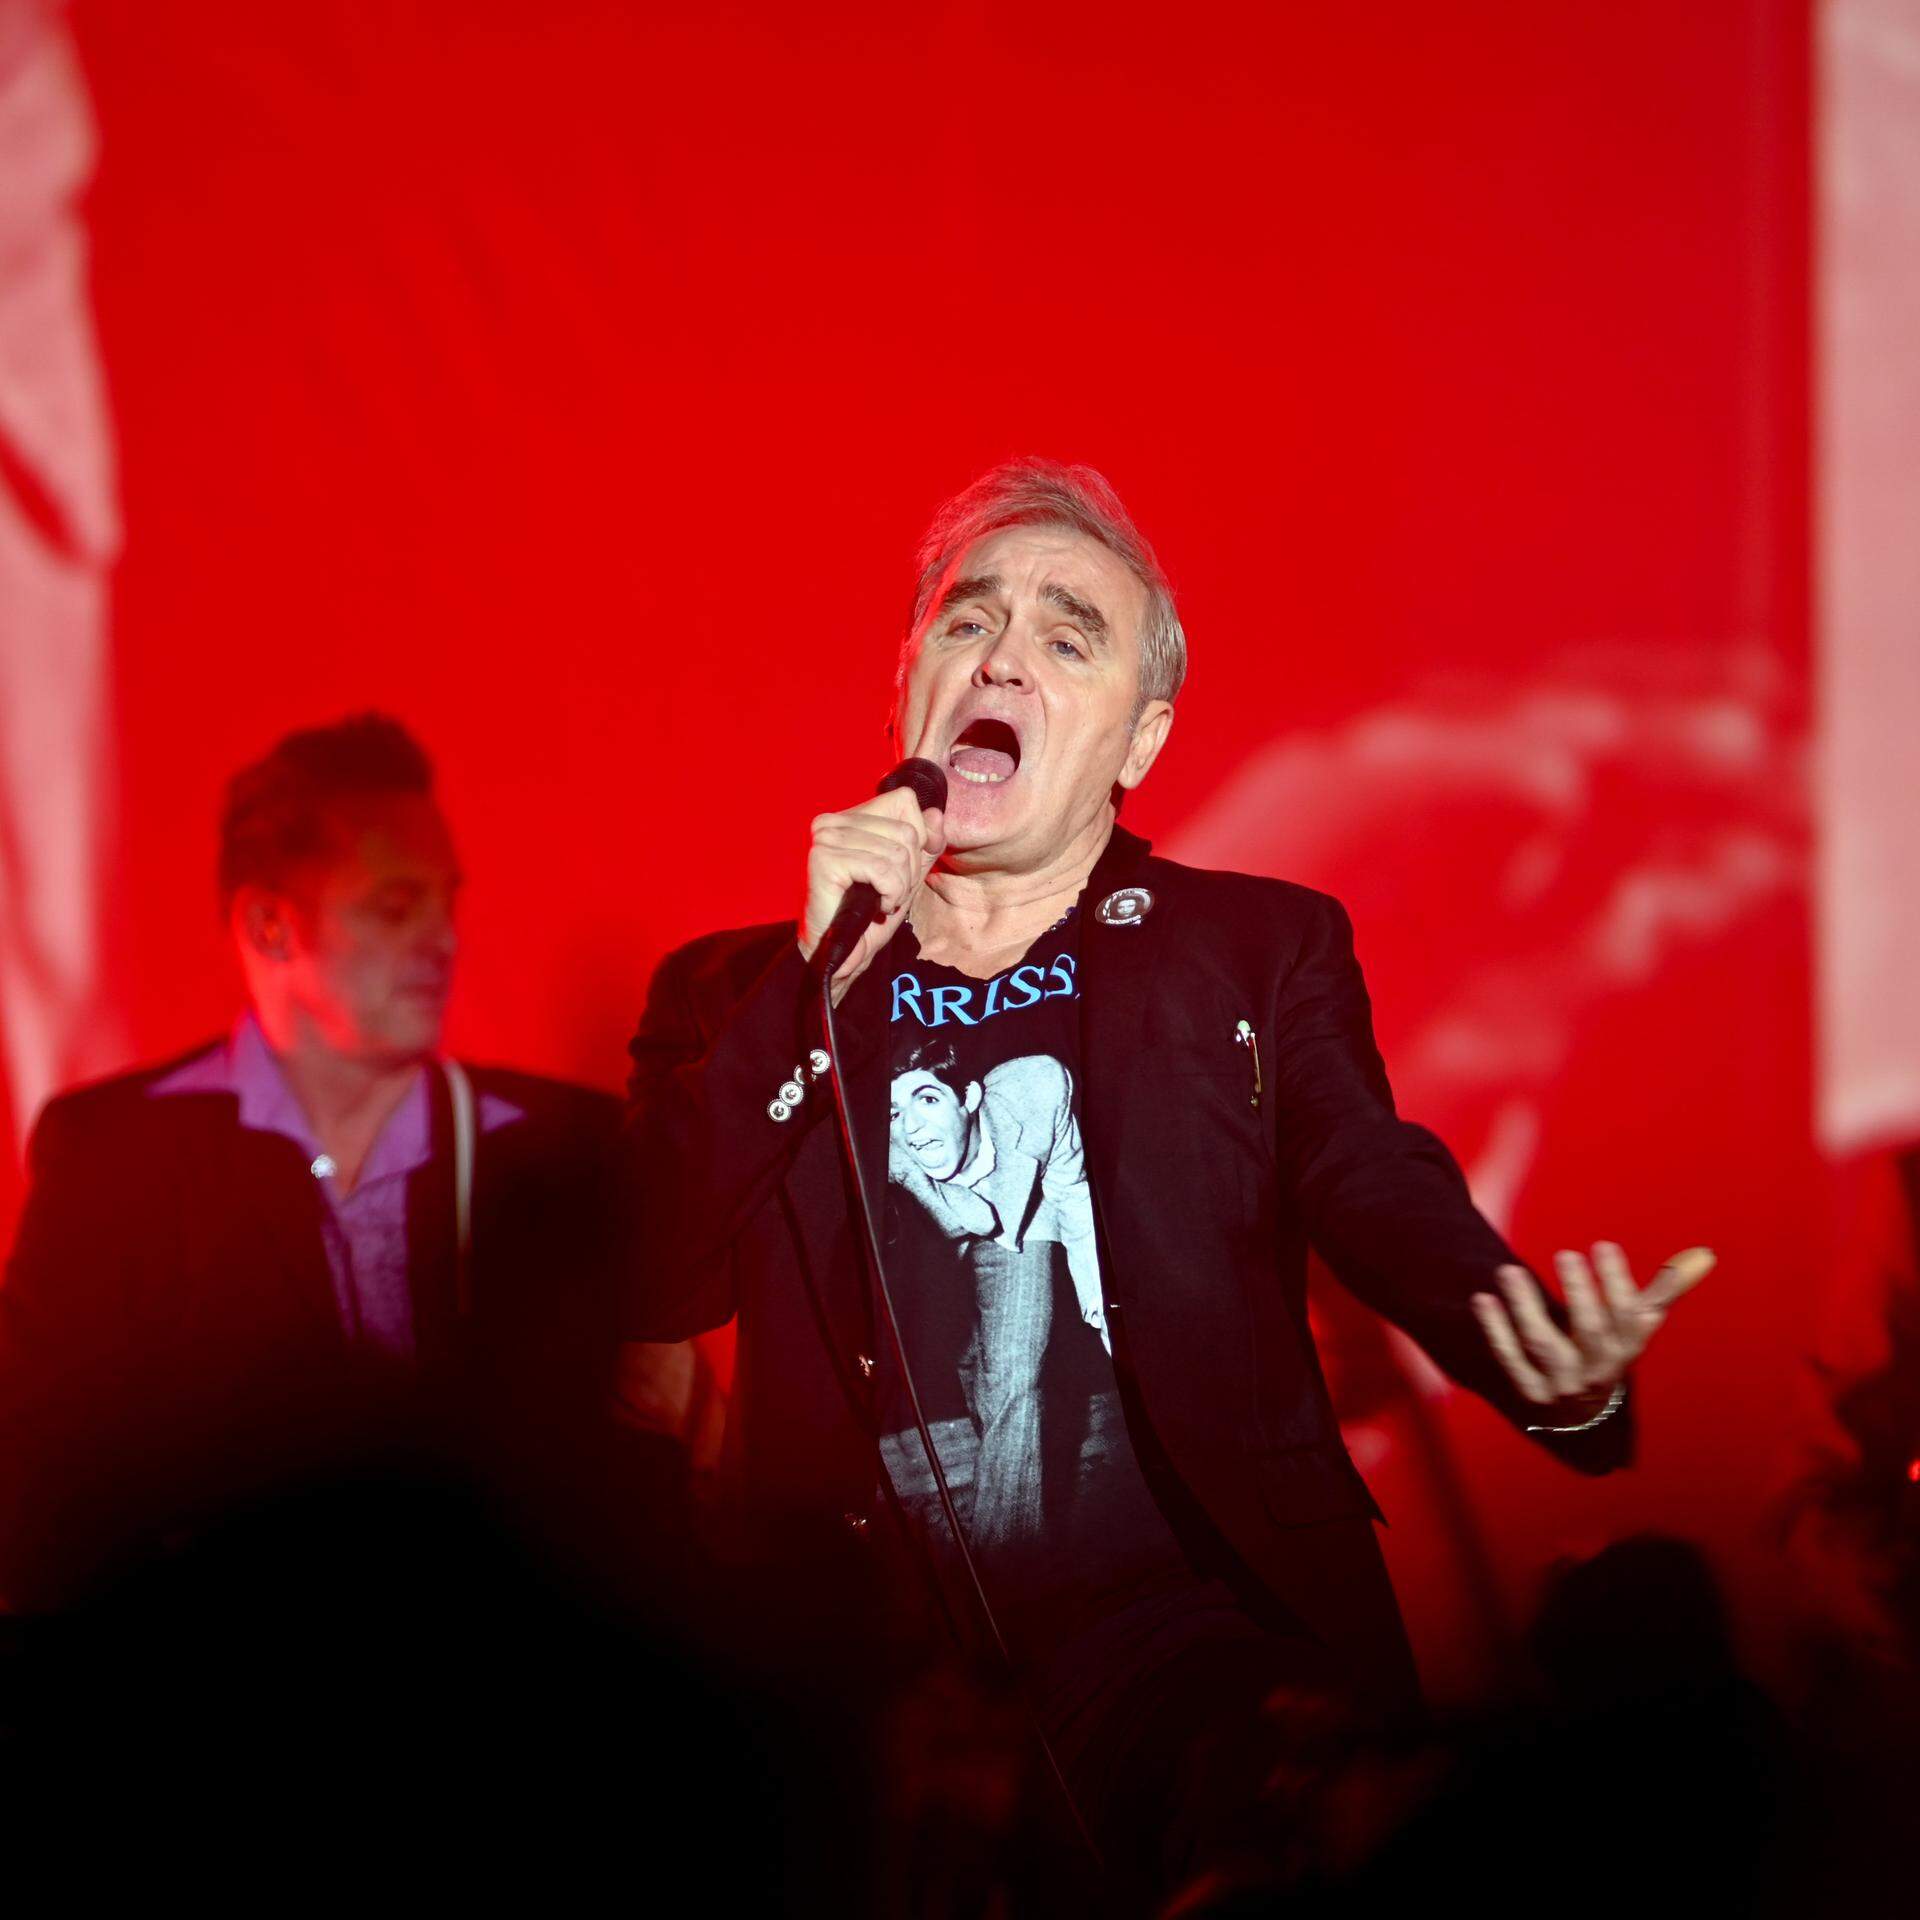 ARCHIV - 30.09.2022, Großbritannien, Doncaster: Der britische Sänger Morrissey gibt ein Konzert im Doncaster Dome. Am 22. Mai wird der ehemalige Smiths-Frontmann 65 Jahre alt. (zu dpa: «Streitbare Kultfigur des Indie-Rock: Sänger Morrissey wird 65») Foto: Robin Burns/ZUMA Press Wire/dpa +++ dpa-Bildfunk +++